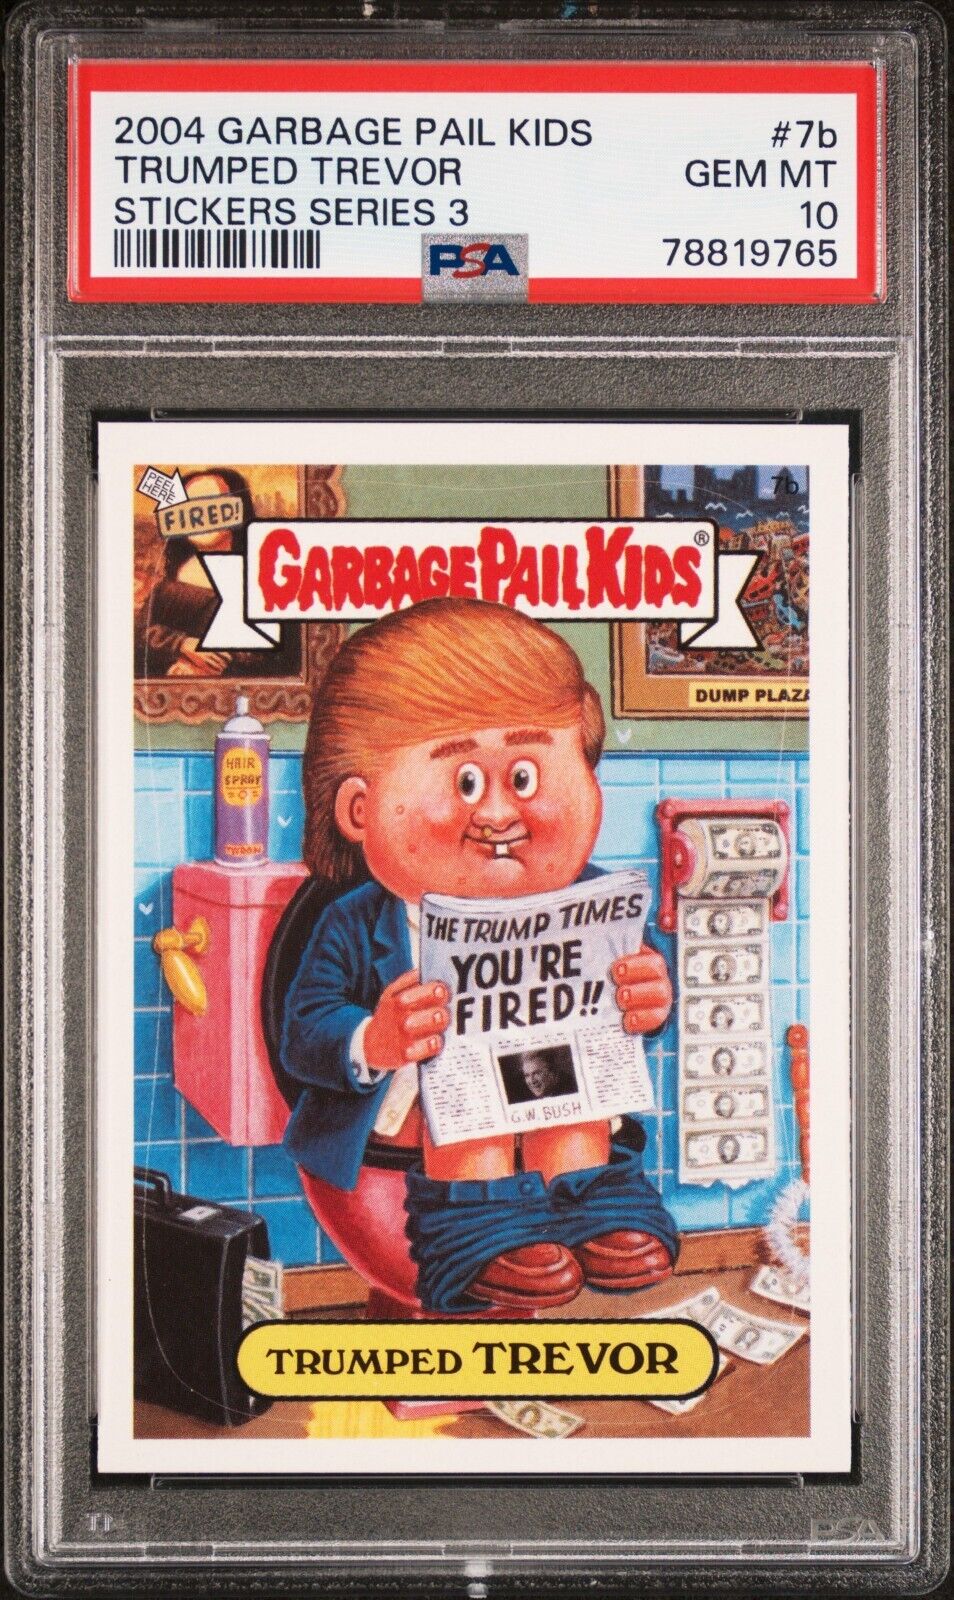 2004 Topps Garbage Pail Kids Stickers 3 7b Trumped Trevor Trump PSA 10 Gem Mint